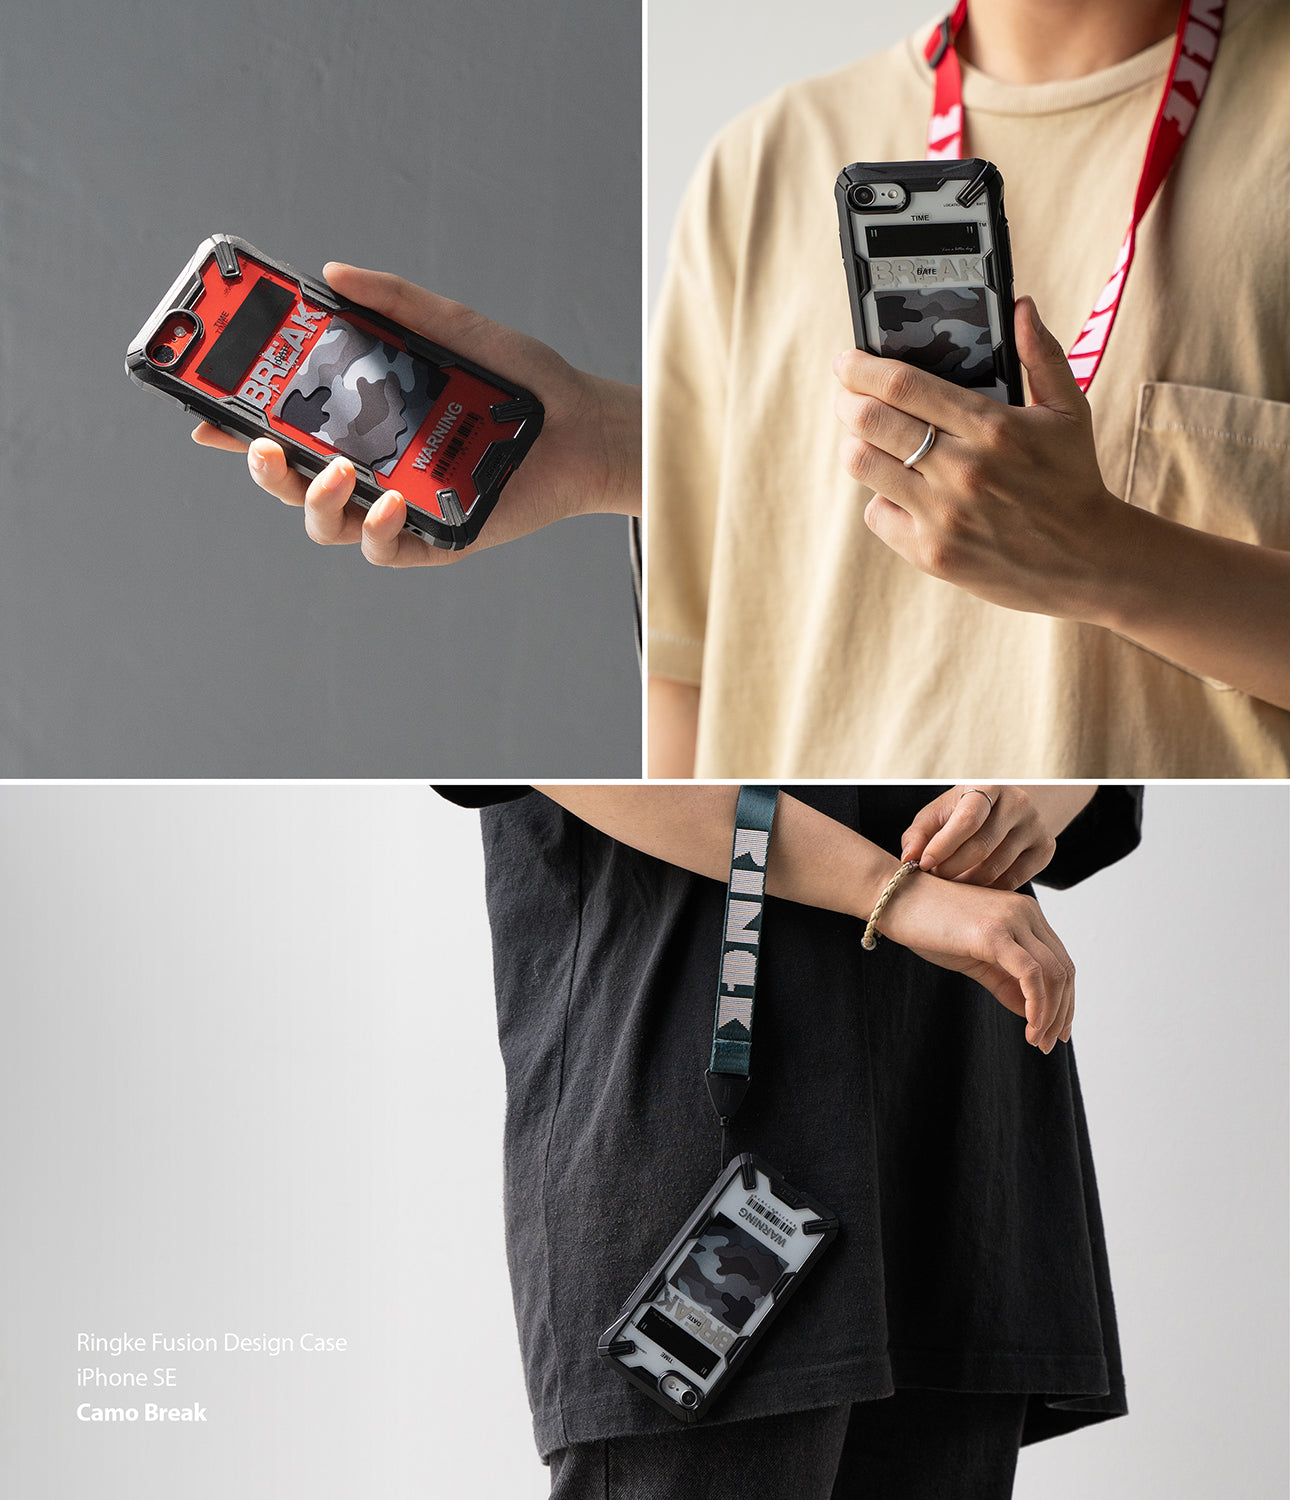 apple iphone se 2020 case, iphone 8 case, ringke fusion-x design - 04. camo black